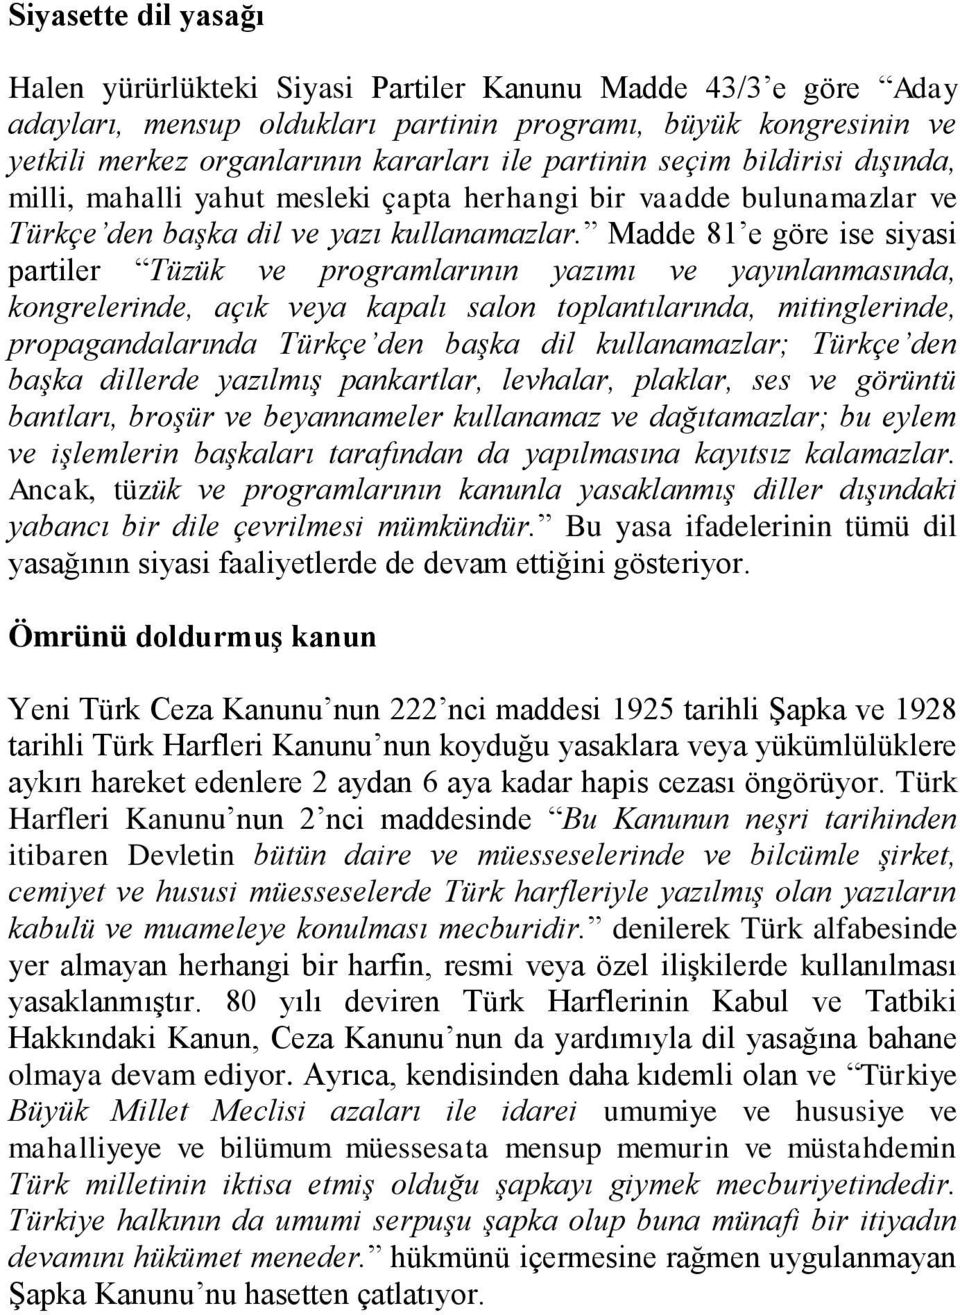 Madde 81 e göre ise siyasi partiler Tüzük ve programlarının yazımı ve yayınlanmasında, kongrelerinde, açık veya kapalı salon toplantılarında, mitinglerinde, propagandalarında Türkçe den başka dil